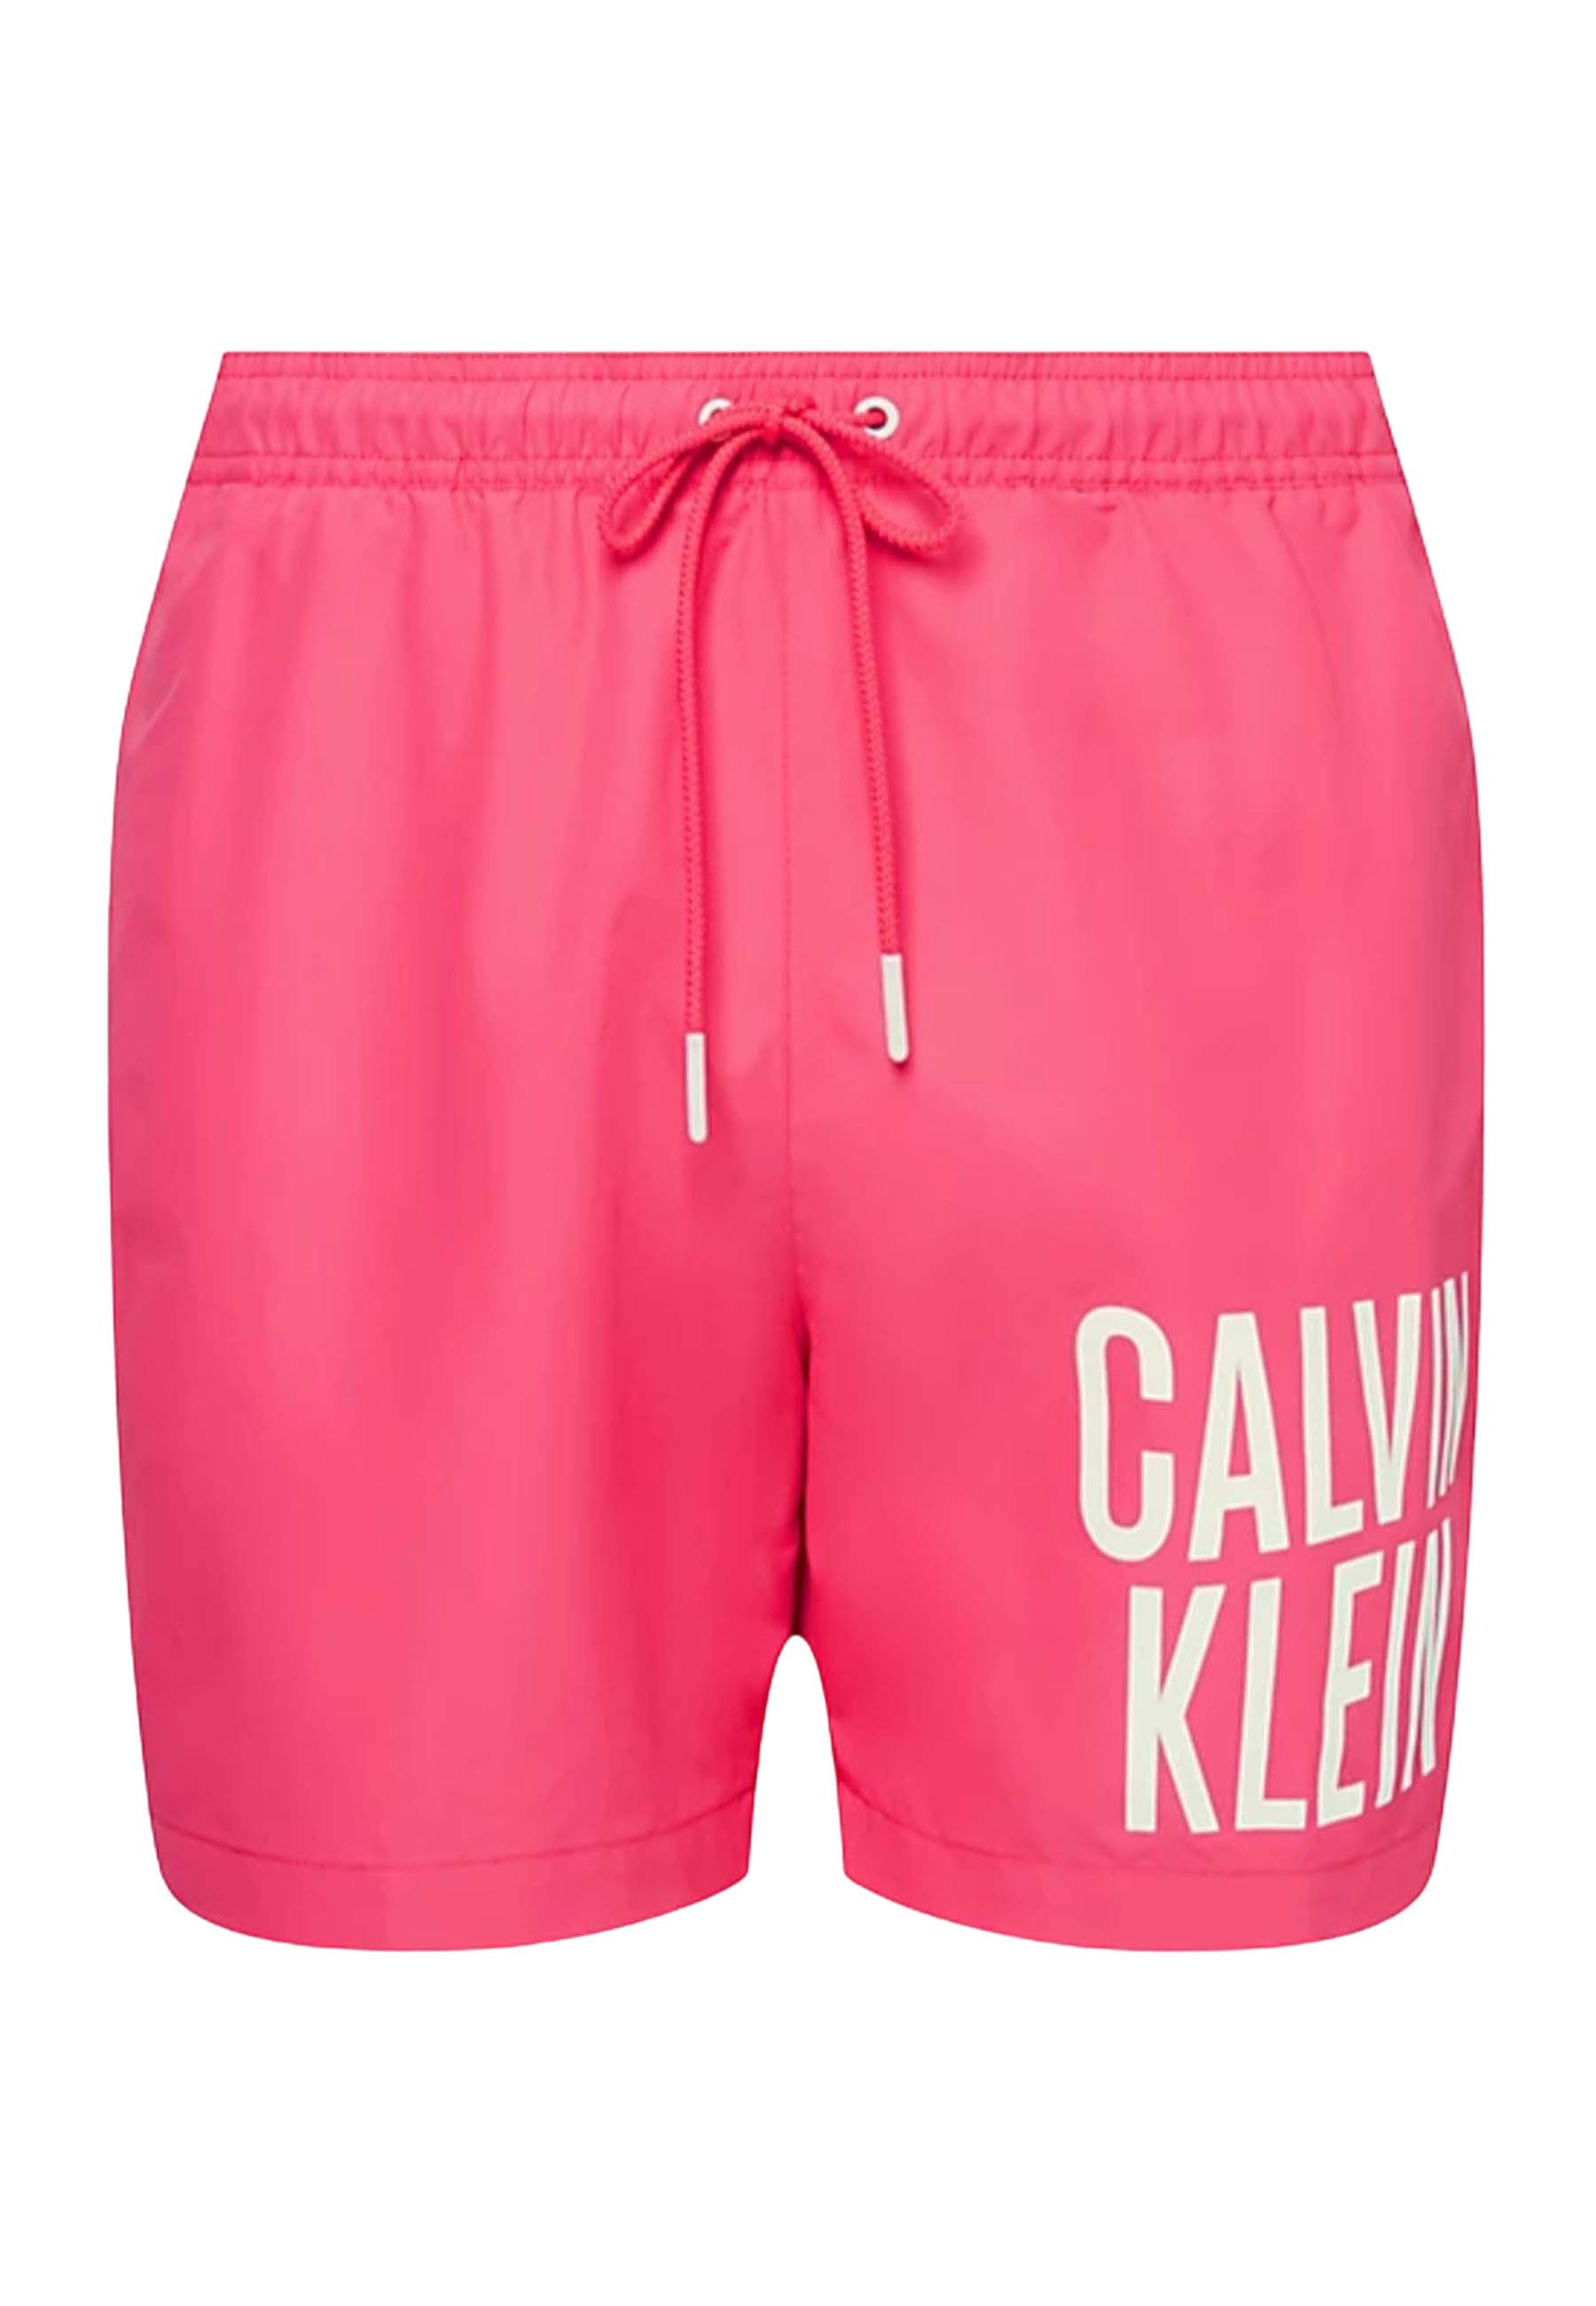 Calvin Klein Medium drawstring zwembroeken roze Heren maat S